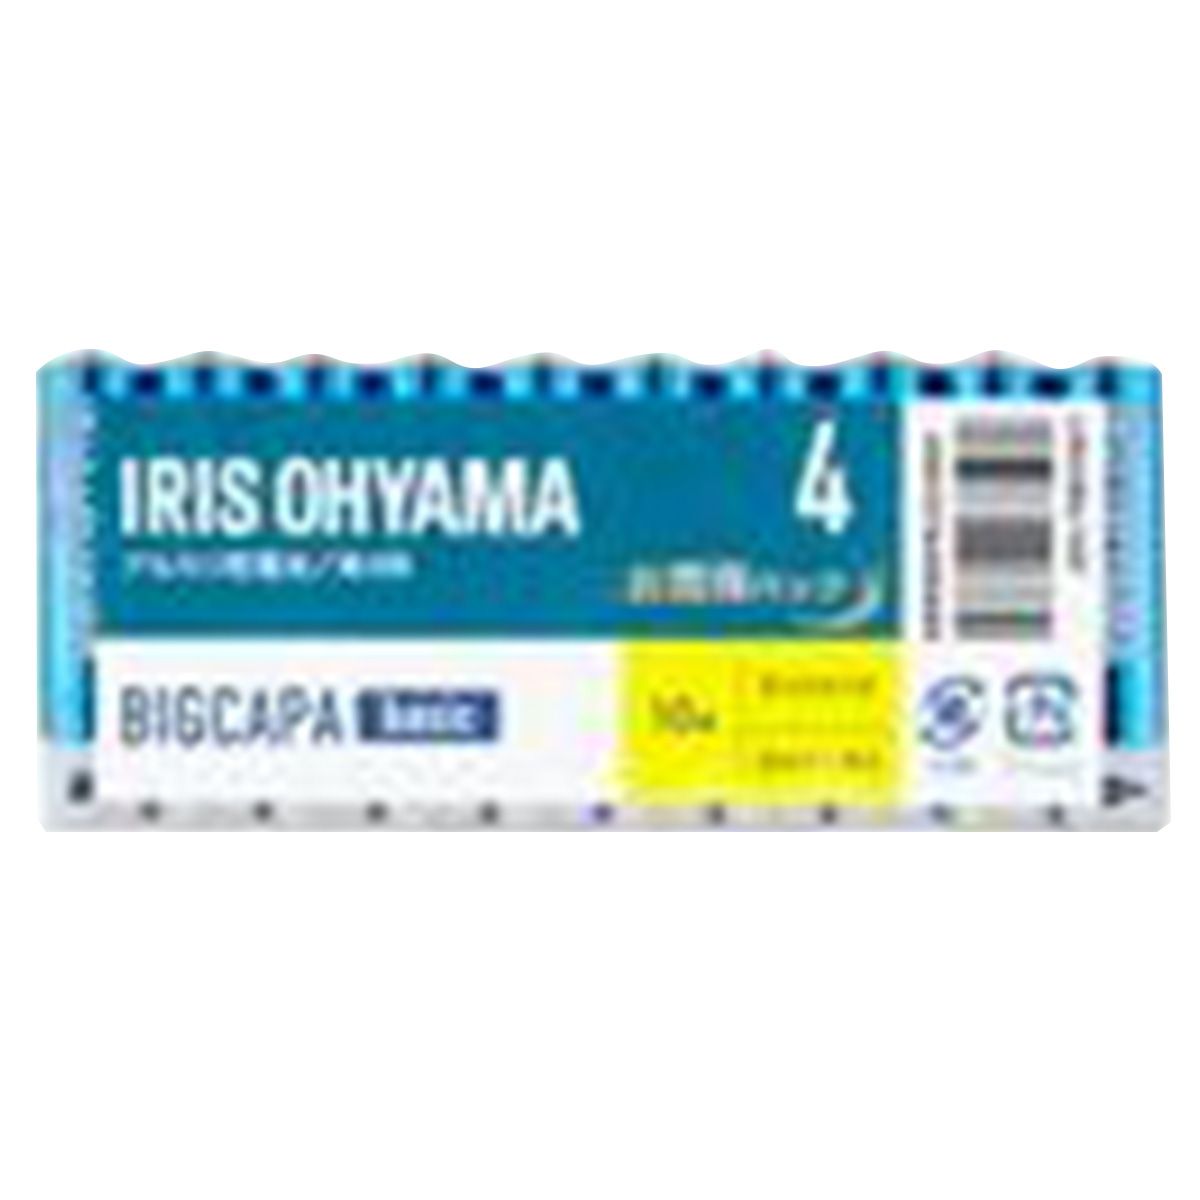 電池 単4形 アルカリ乾電池 IRIS OHYAMA  アイリスオーヤマ BIGCAPA basic 10本 362245